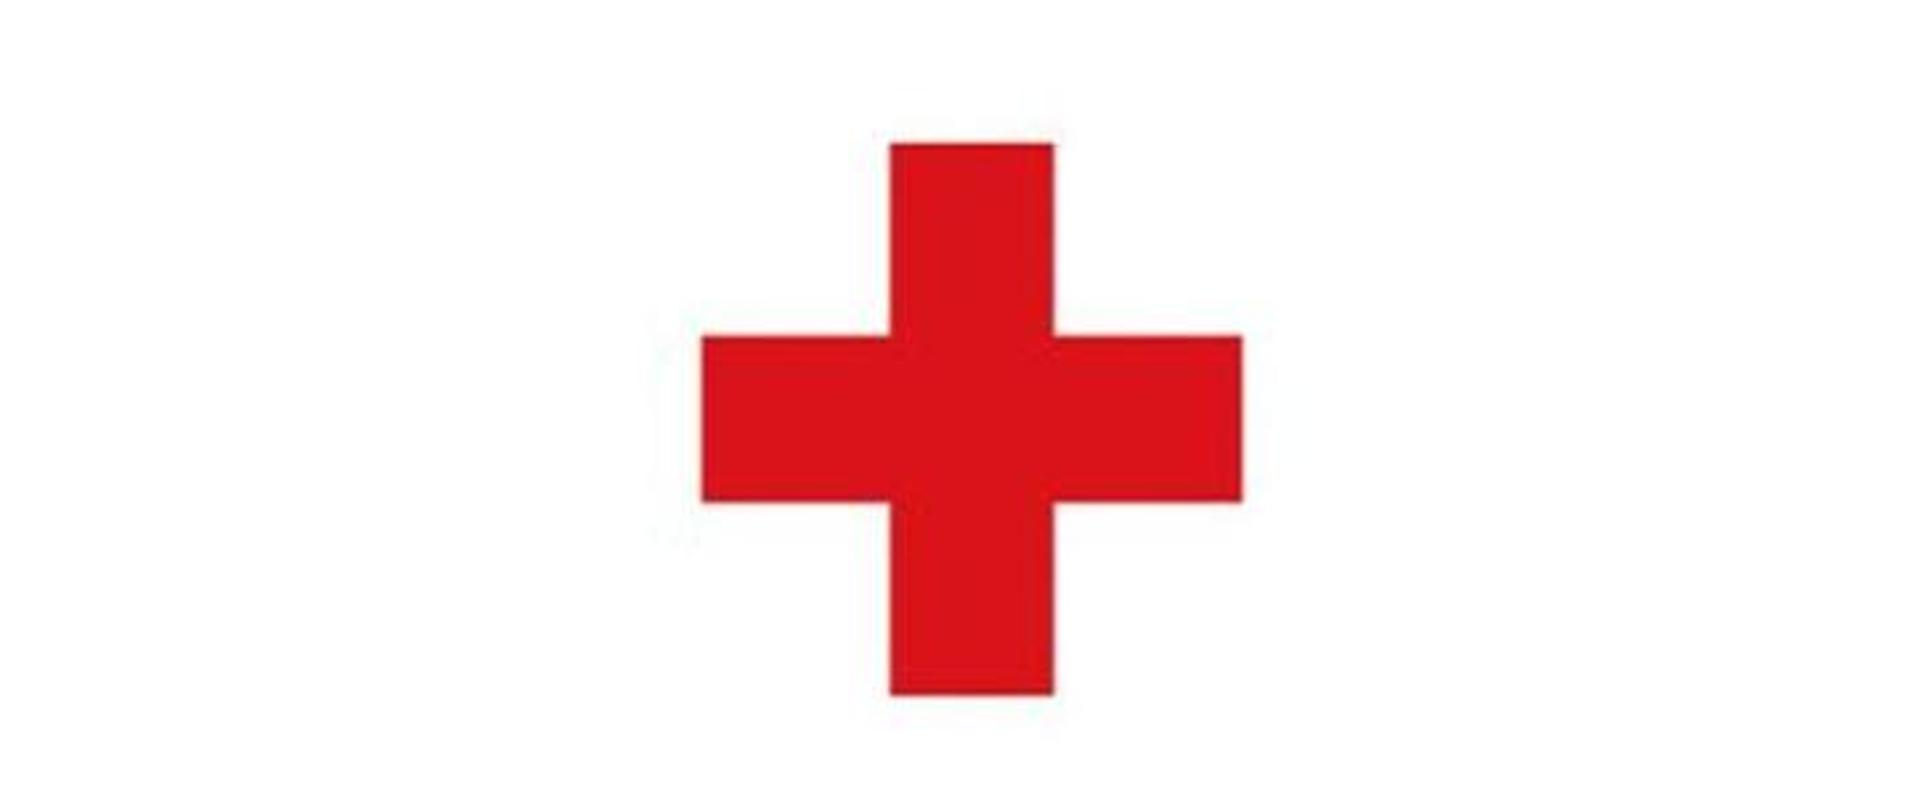 na białym tle znak czerwonego krzyża - krzyż koloru czerwonego